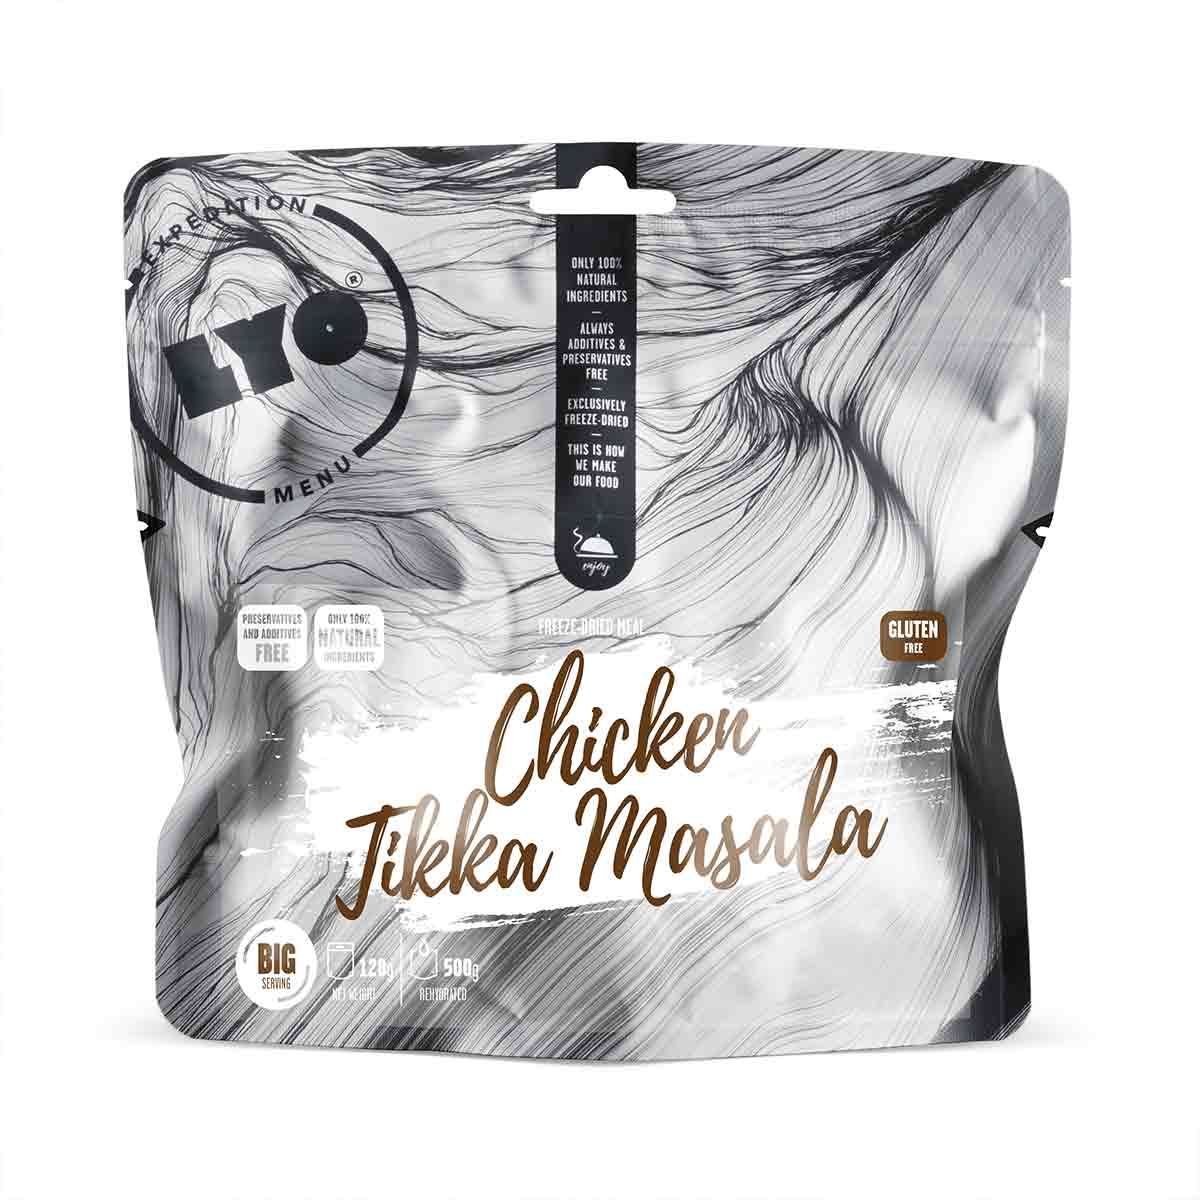 Chicken tikka masala - Big pack